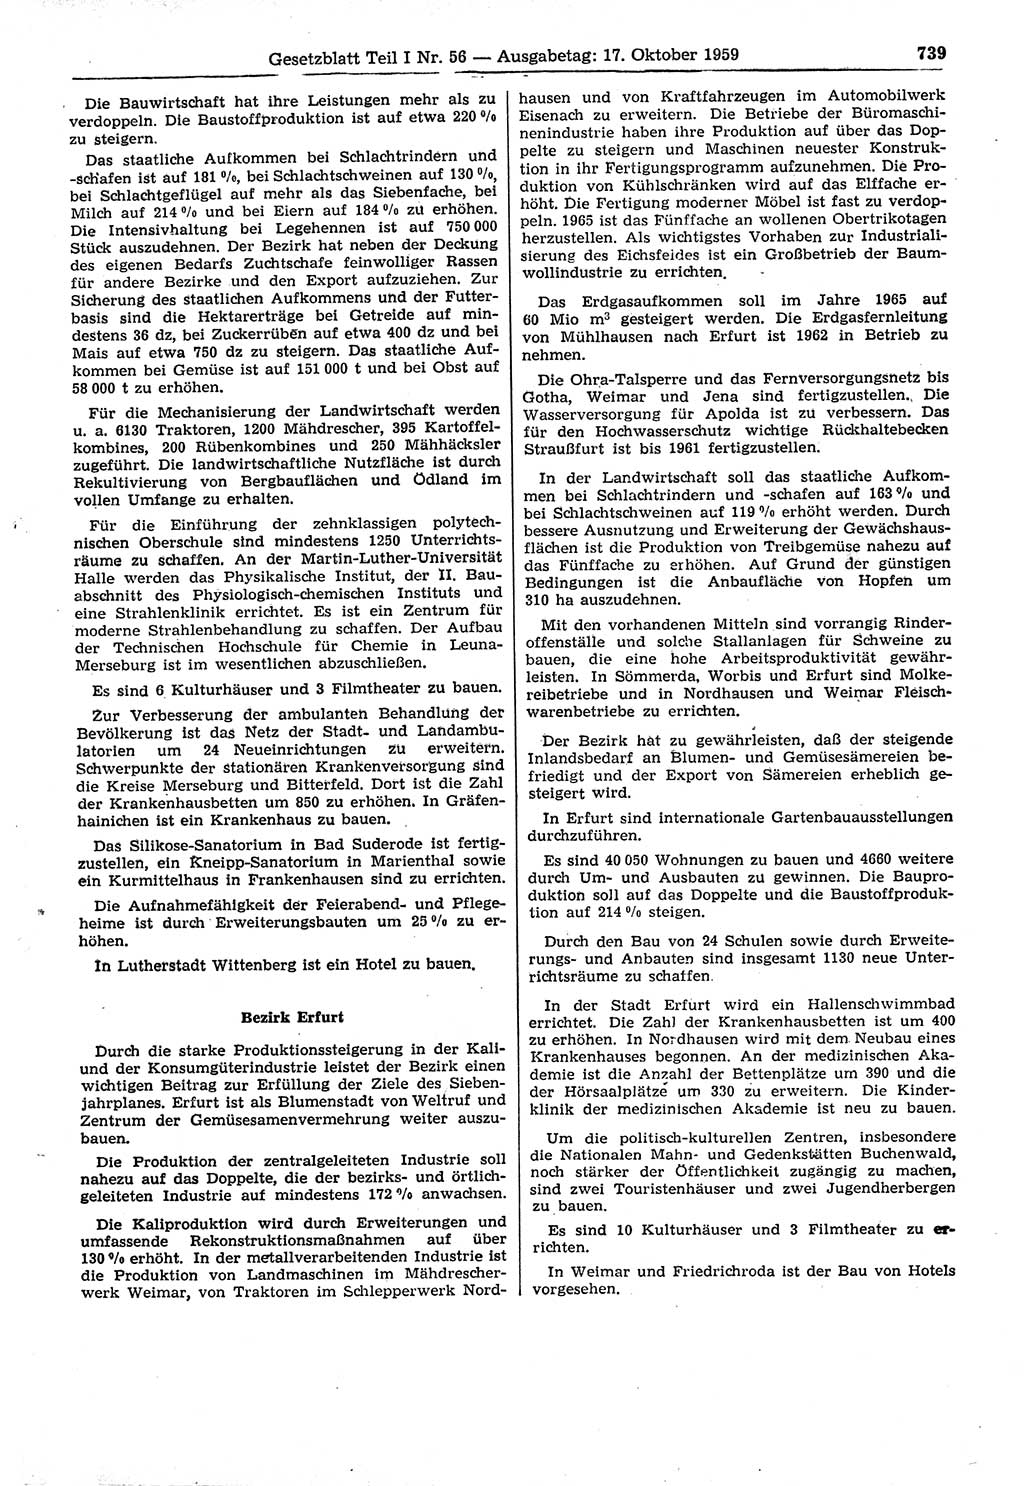 Gesetzblatt (GBl.) der Deutschen Demokratischen Republik (DDR) Teil Ⅰ 1959, Seite 739 (GBl. DDR Ⅰ 1959, S. 739)